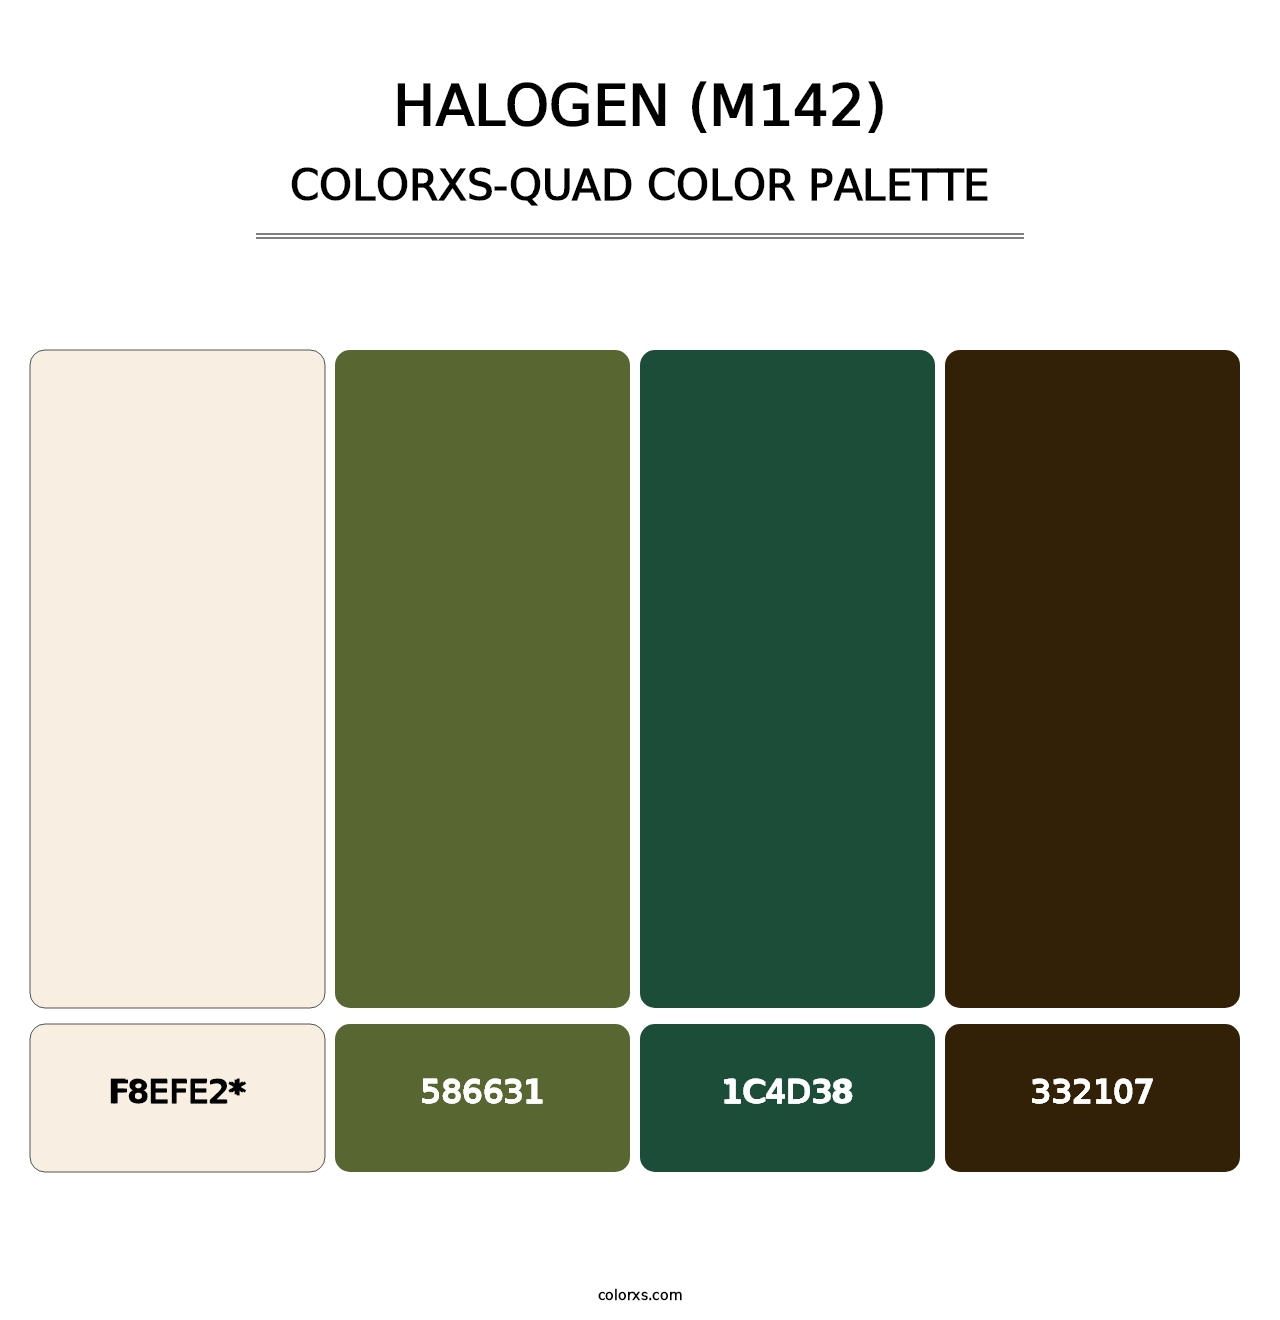 Halogen (M142) - Colorxs Quad Palette